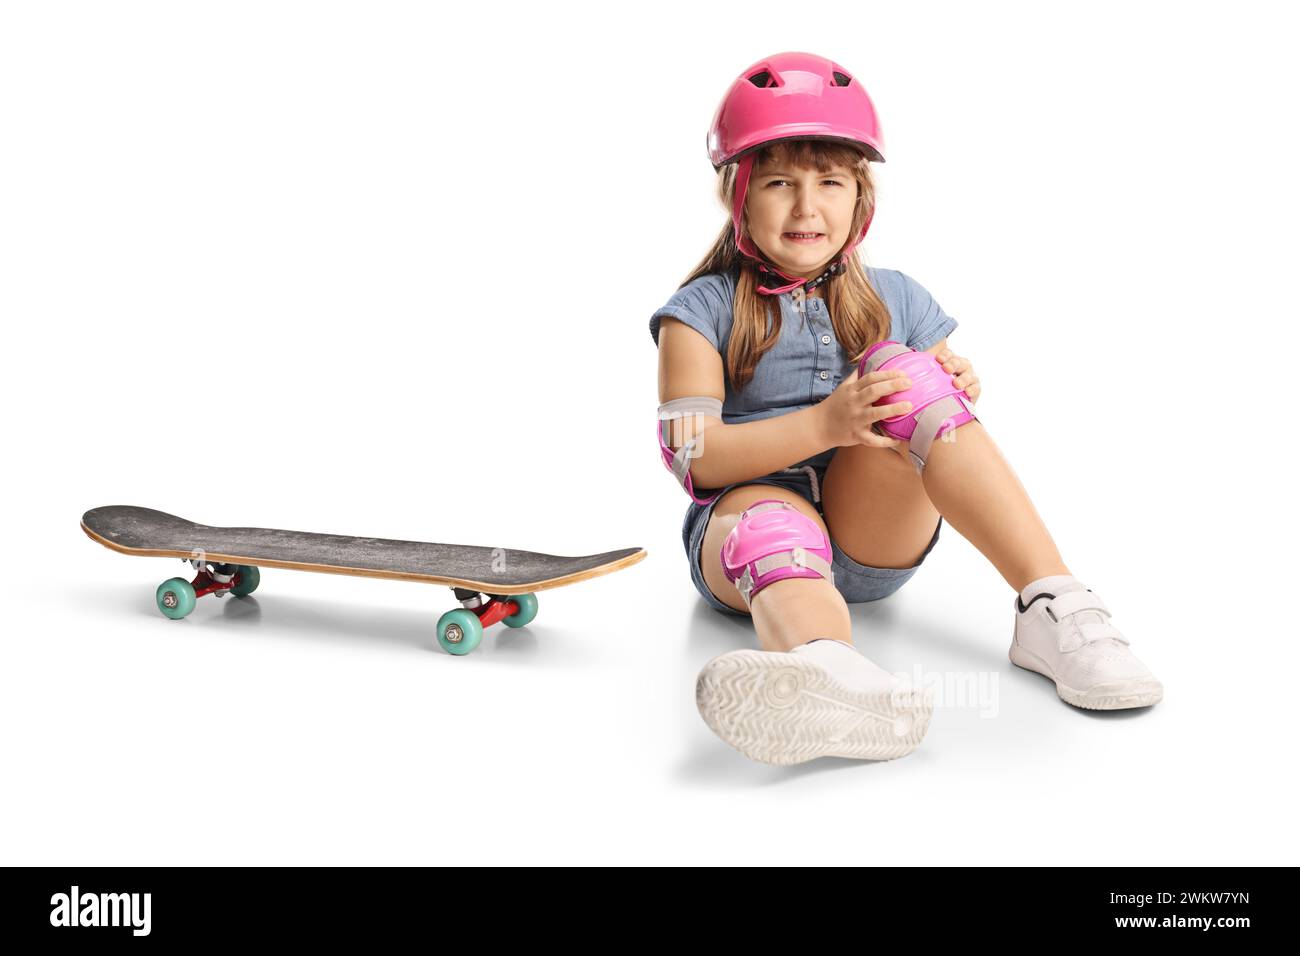 Mädchen, das vom Skateboard fällt und das Knie verletzt, isoliert auf weißem Hintergrund Stockfoto